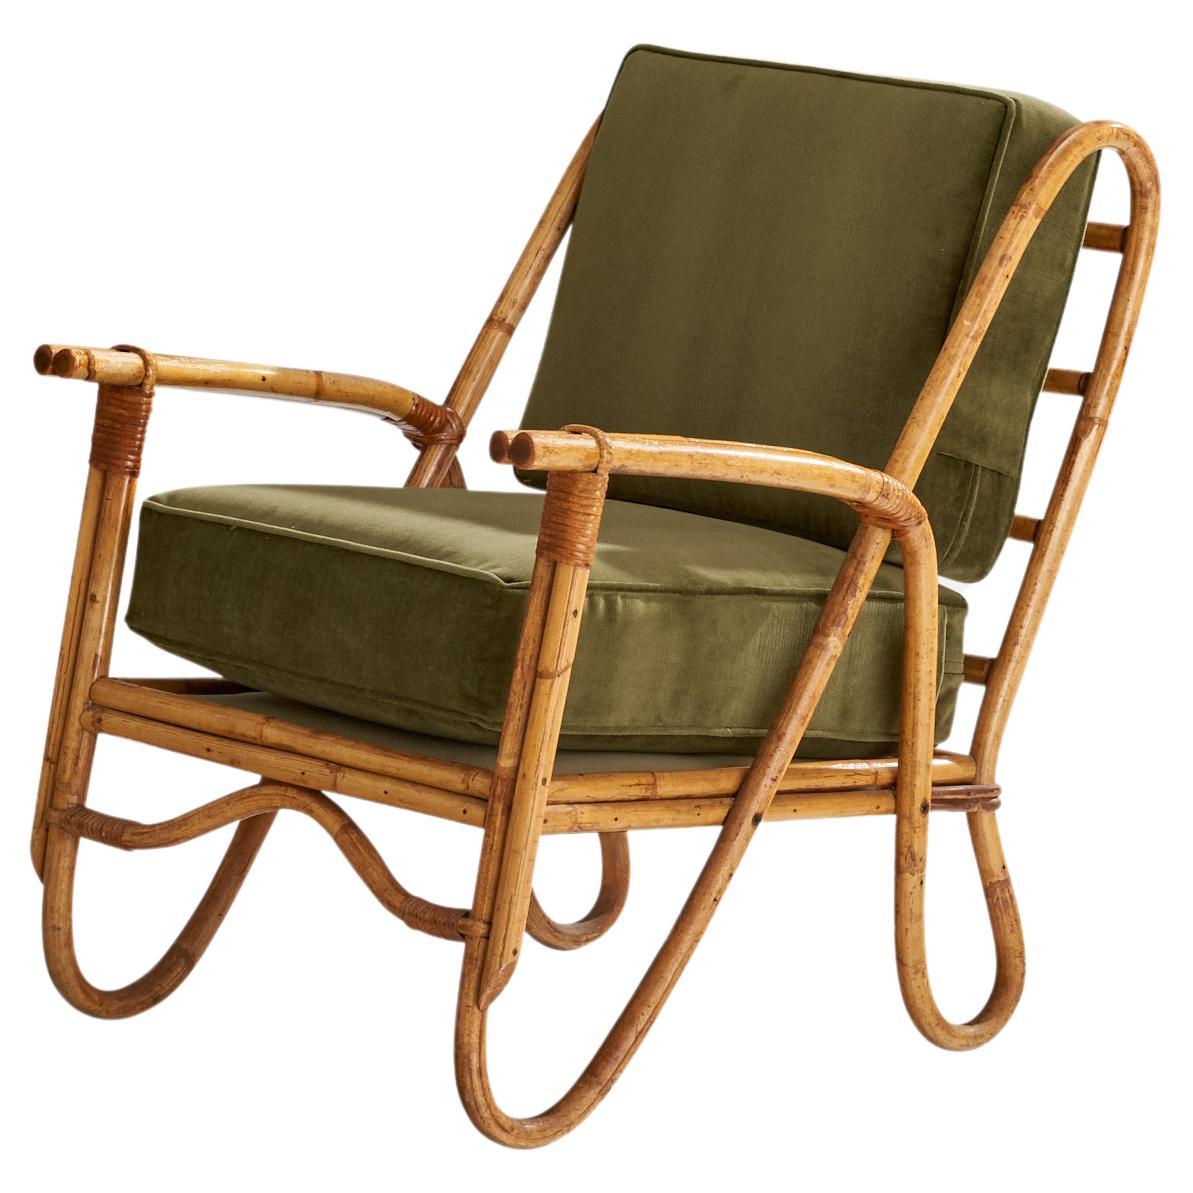 American Design, chaise longue, bambou, rotin, velours, États-Unis, années 1950